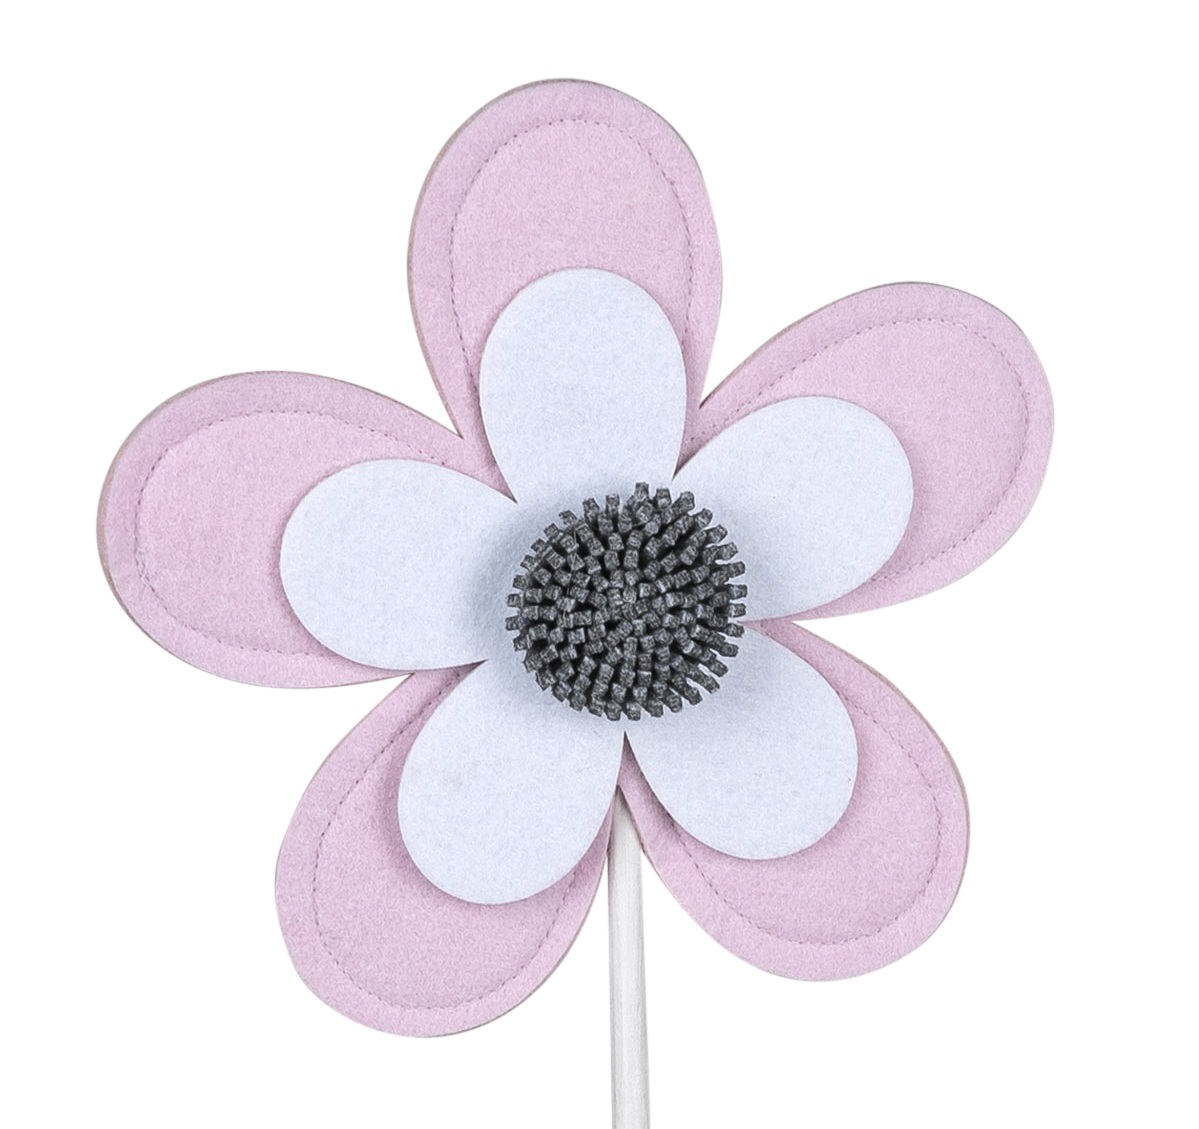 Filz Blume H. 56cm auf Fuß mit Holz-Sockel  rosa  Dekoobjekt Formano F23